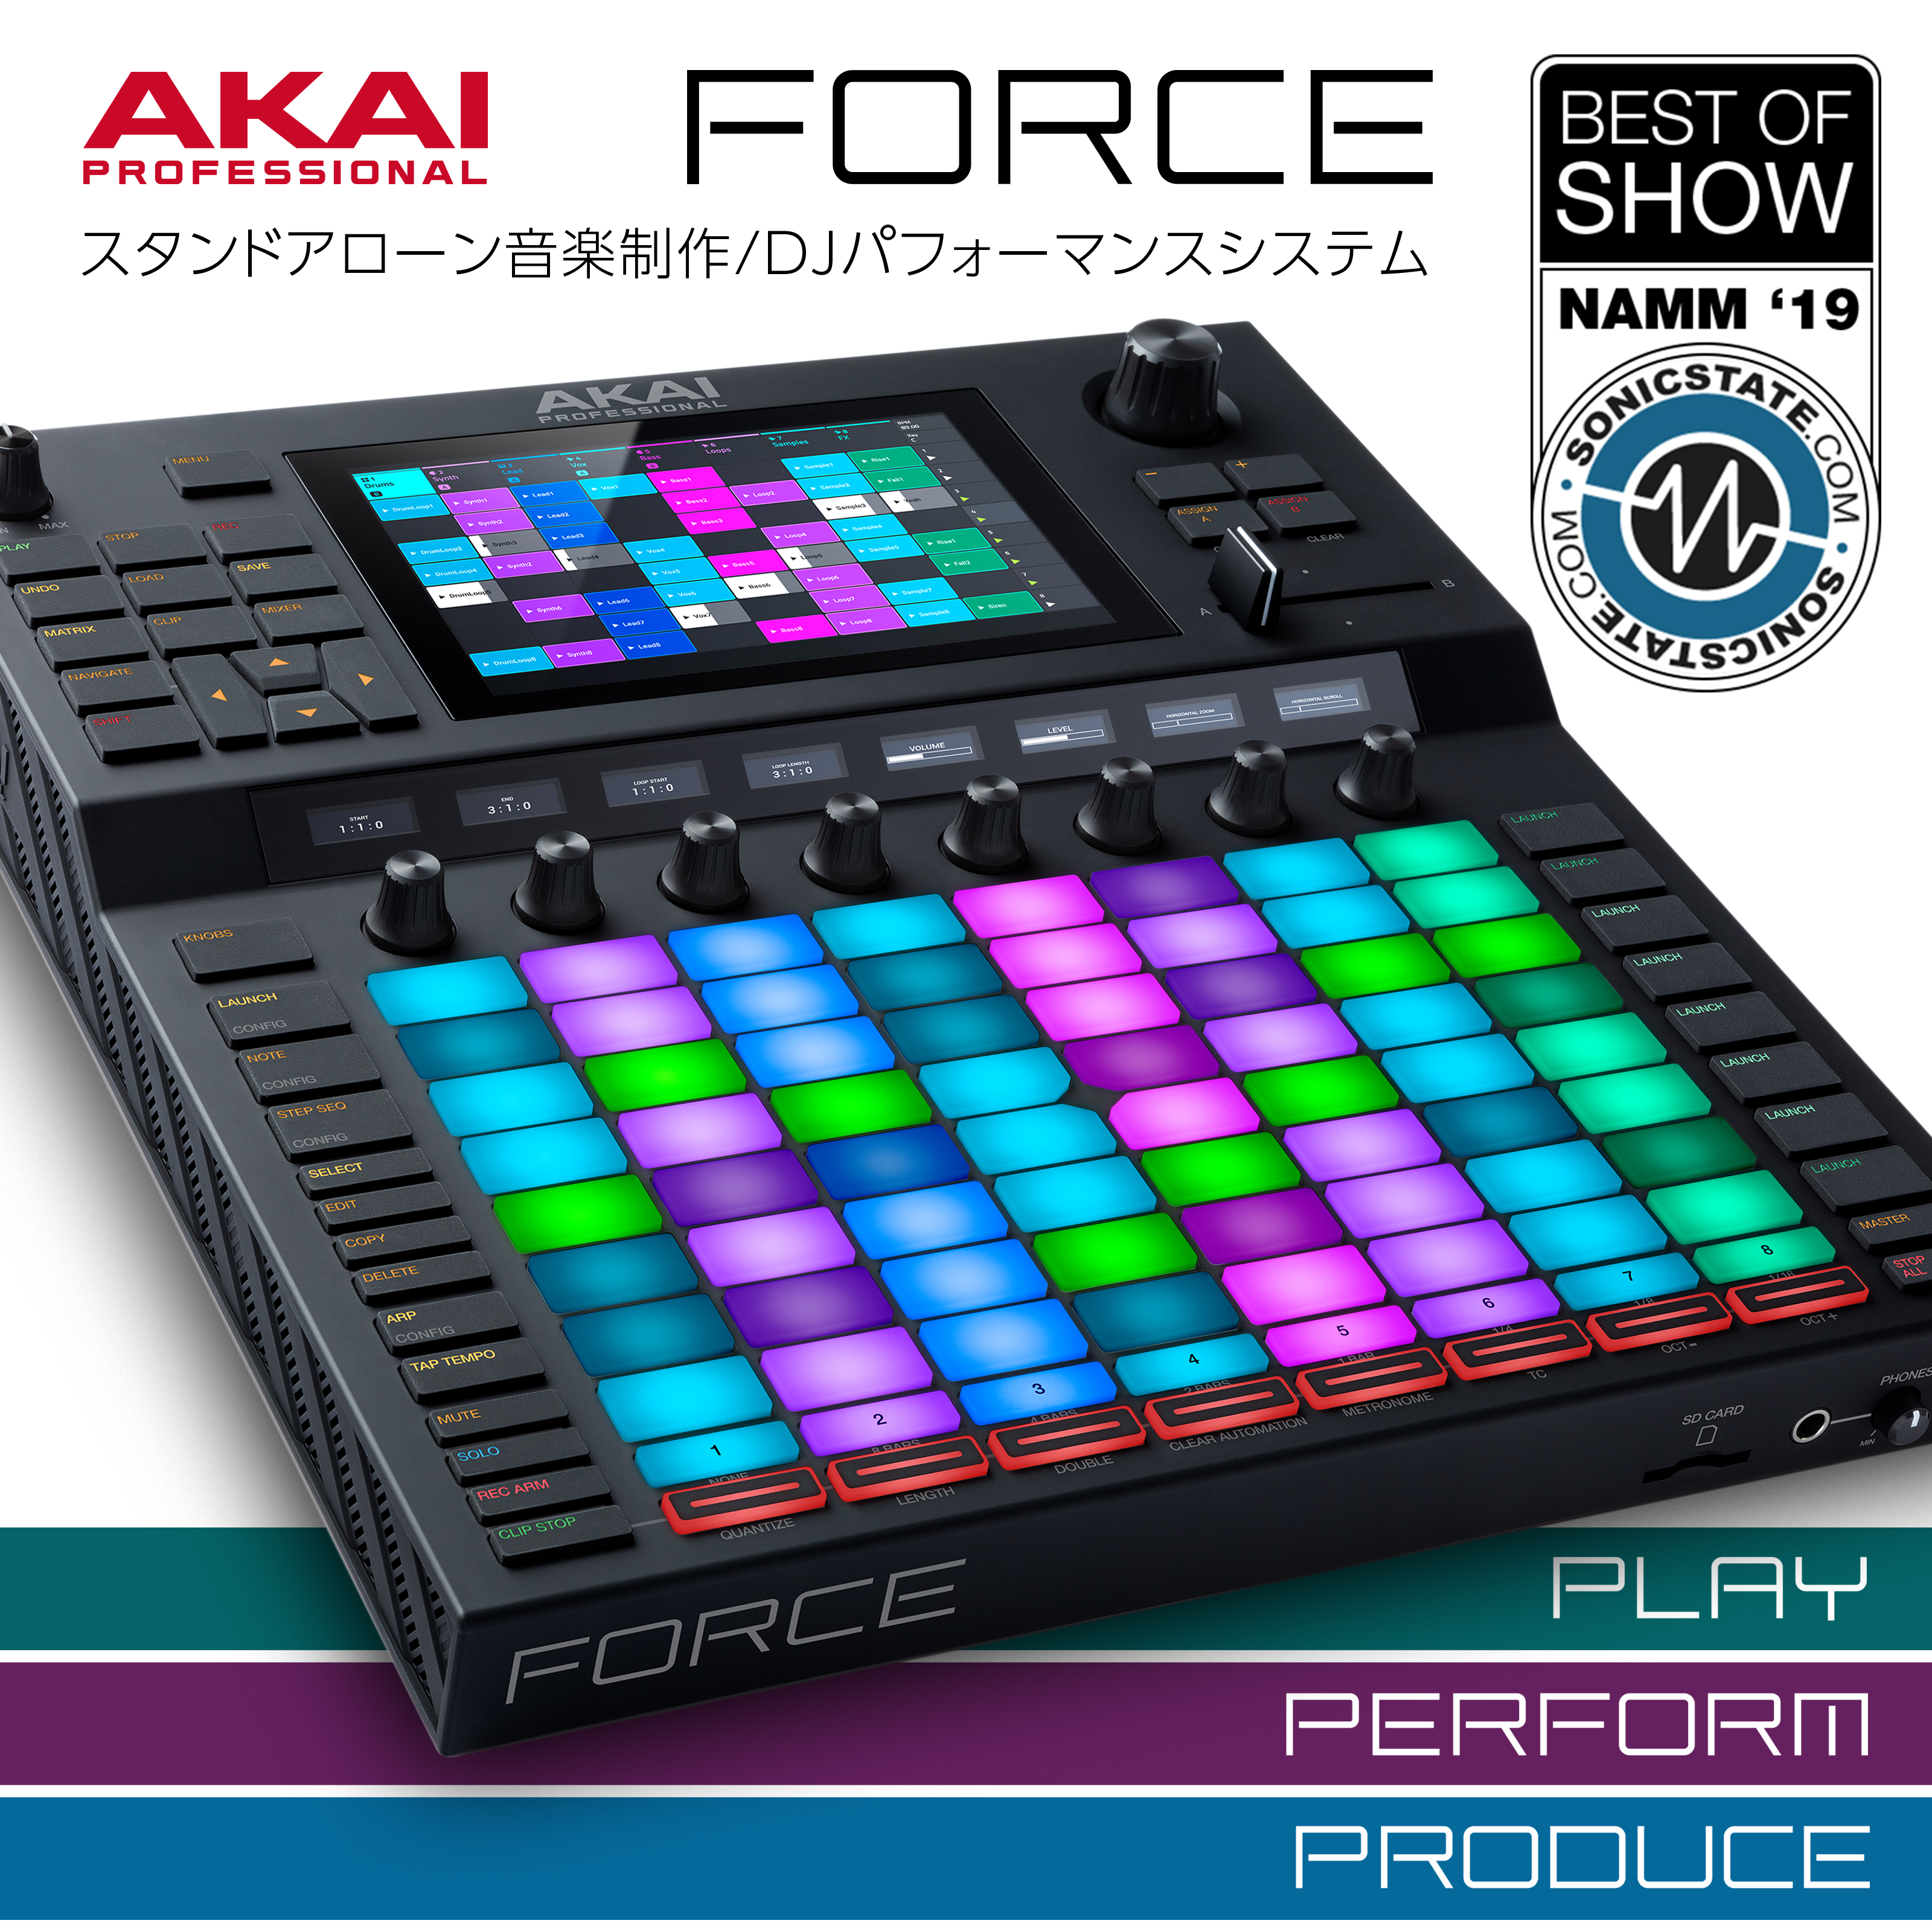 Akai Professional / FORCE】スタンドアローン型の音楽制作/DJ